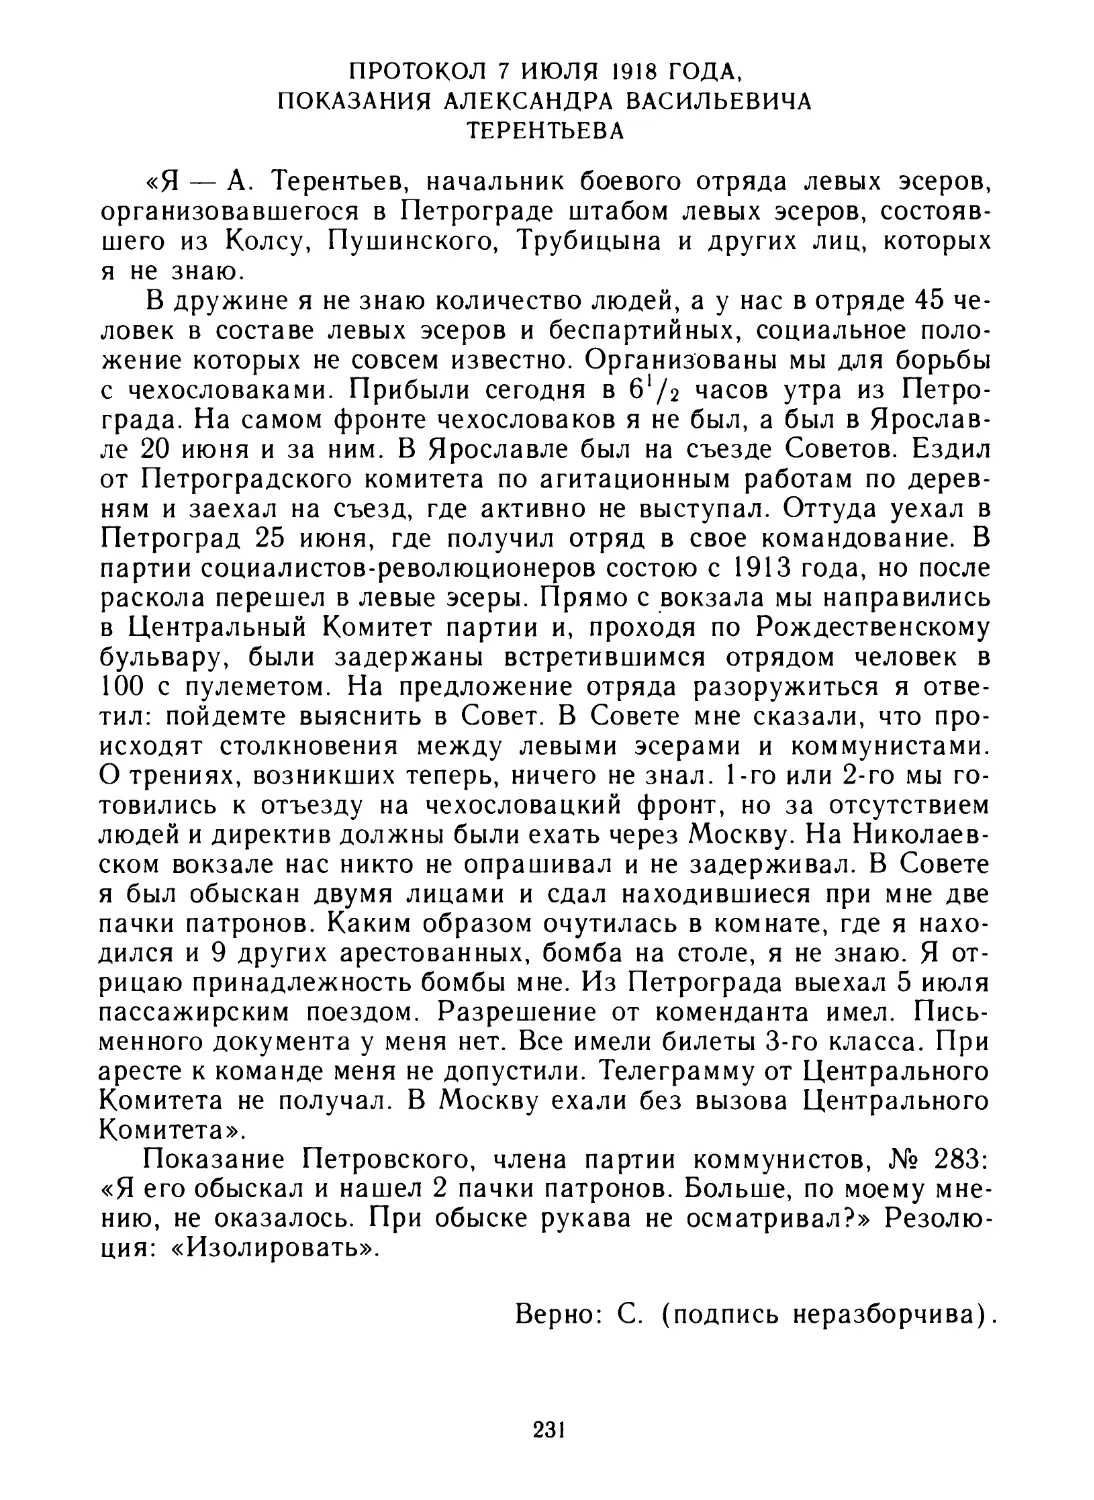 Протокол 7 июля 1918 года, показания Александра Васильевича Терентьева